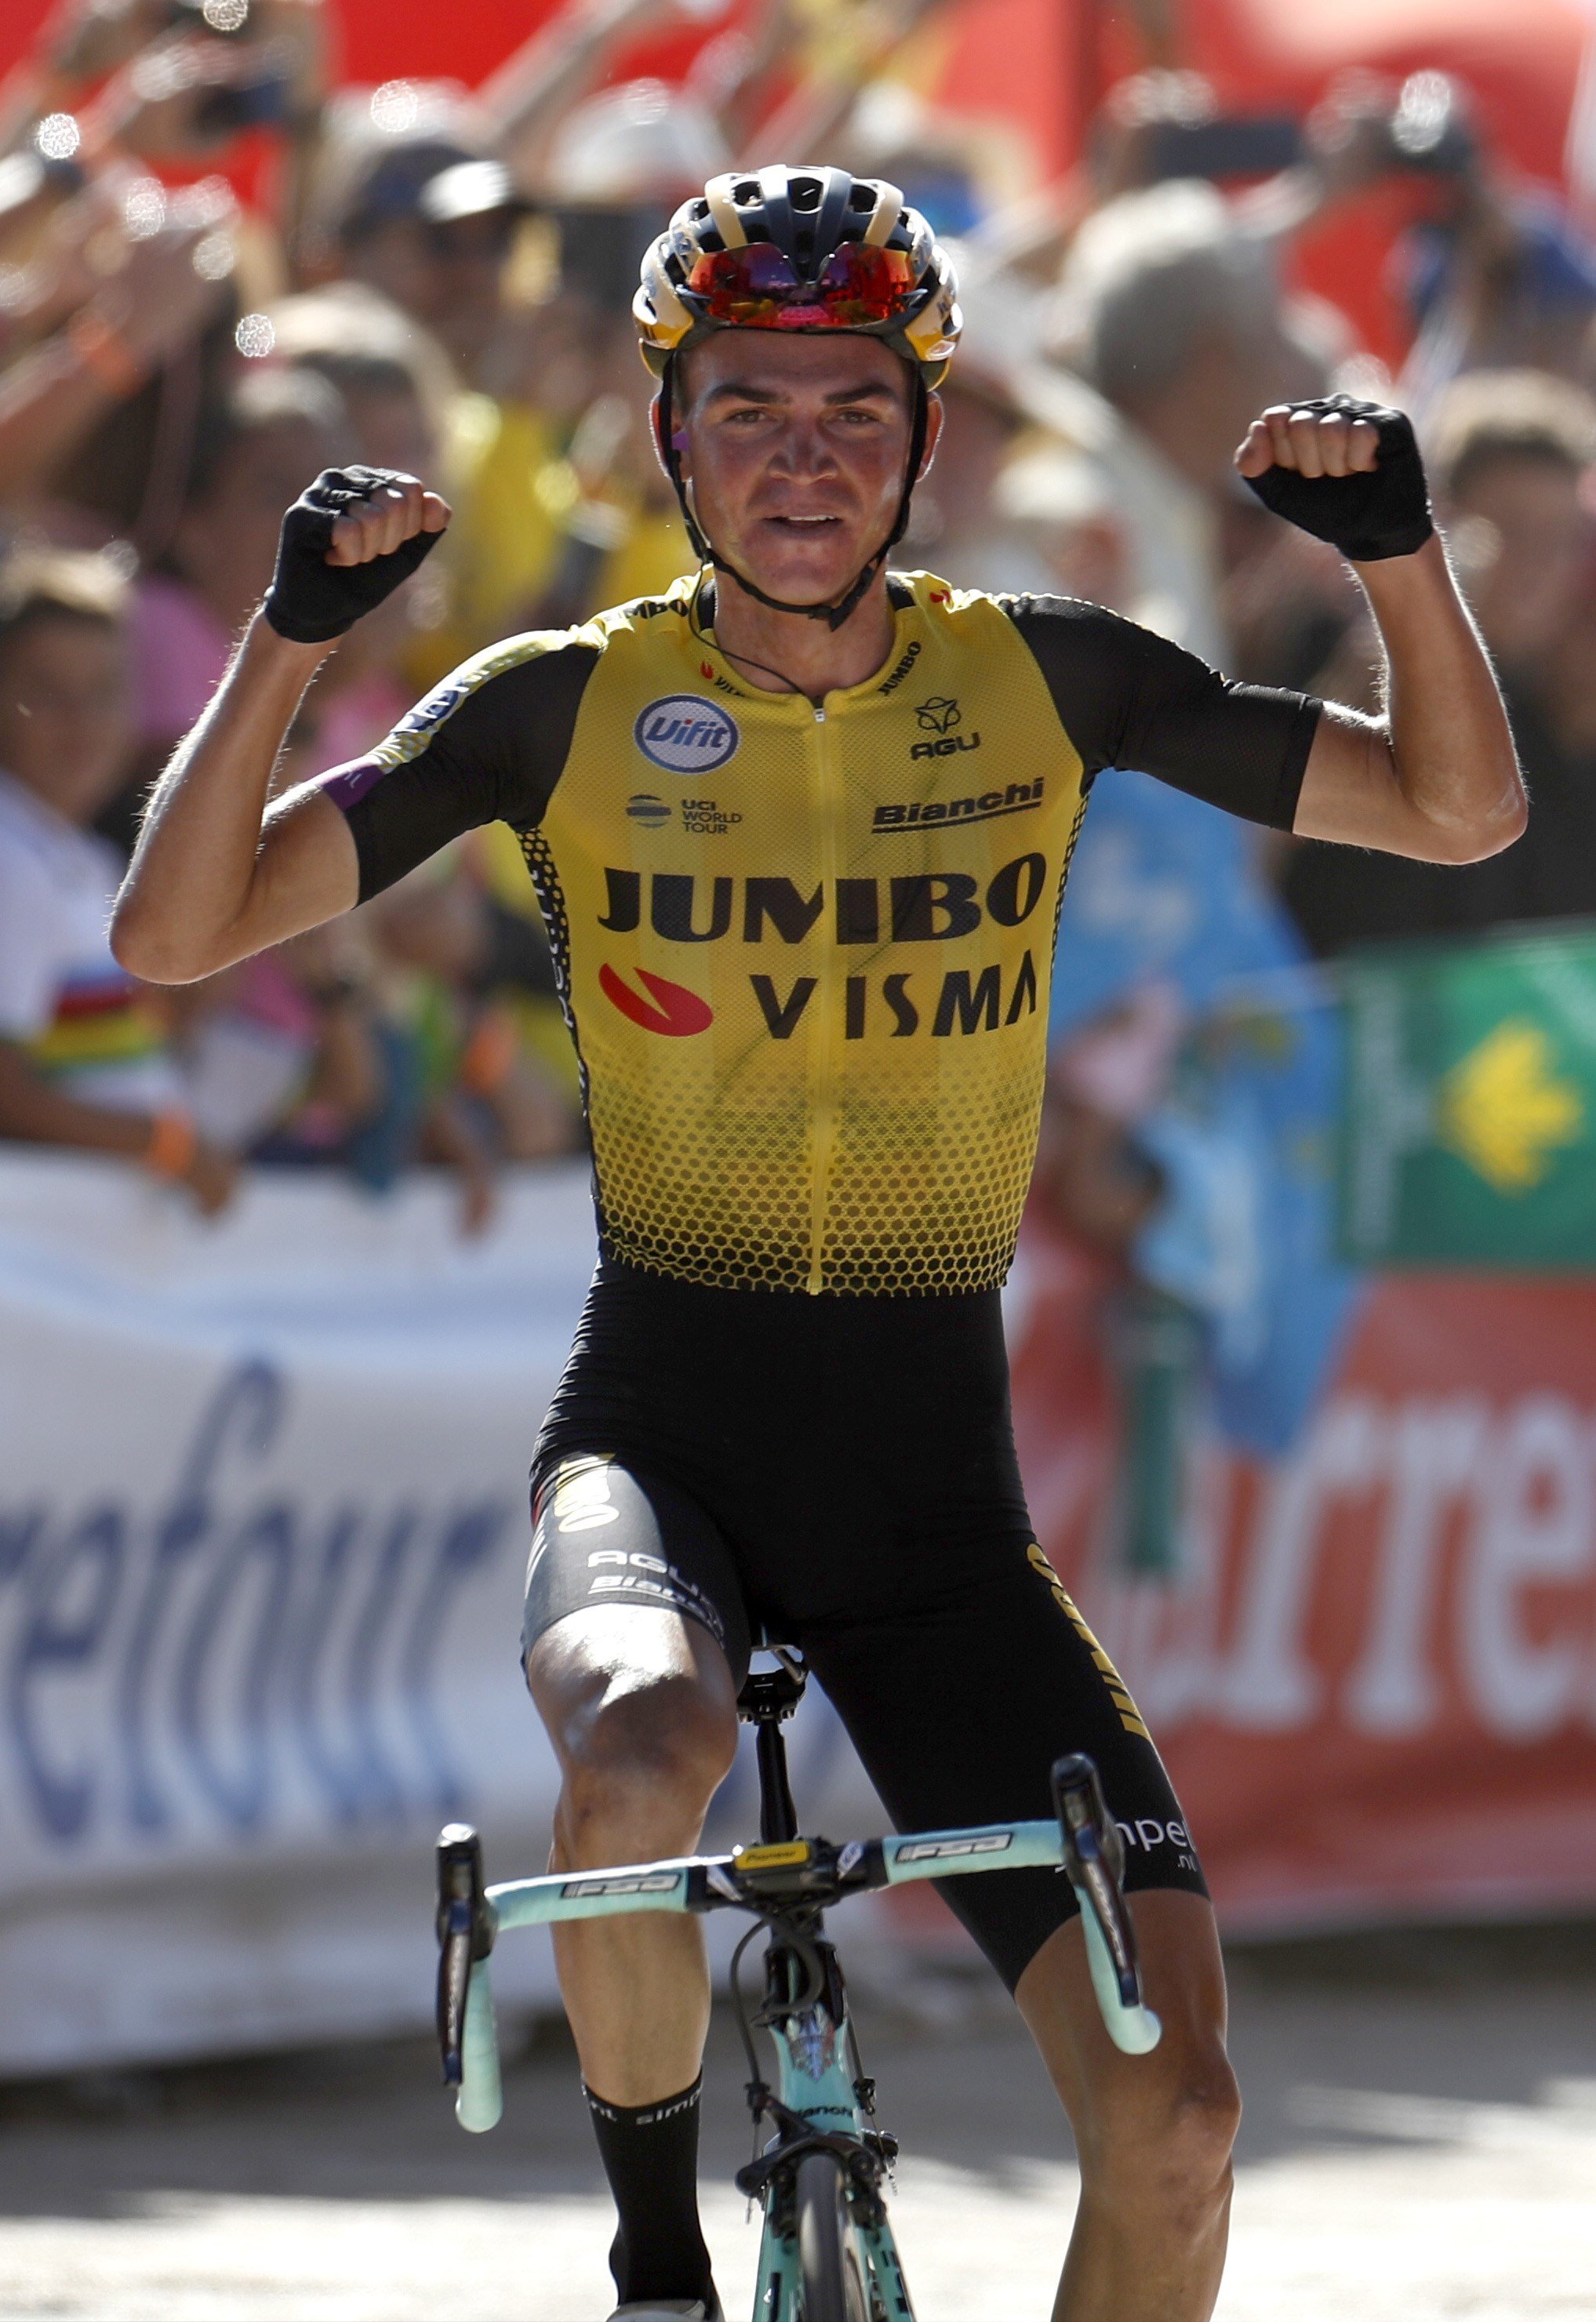 Kuss guanya la quinzena etapa de la Vuelta i Roglic segueix líder